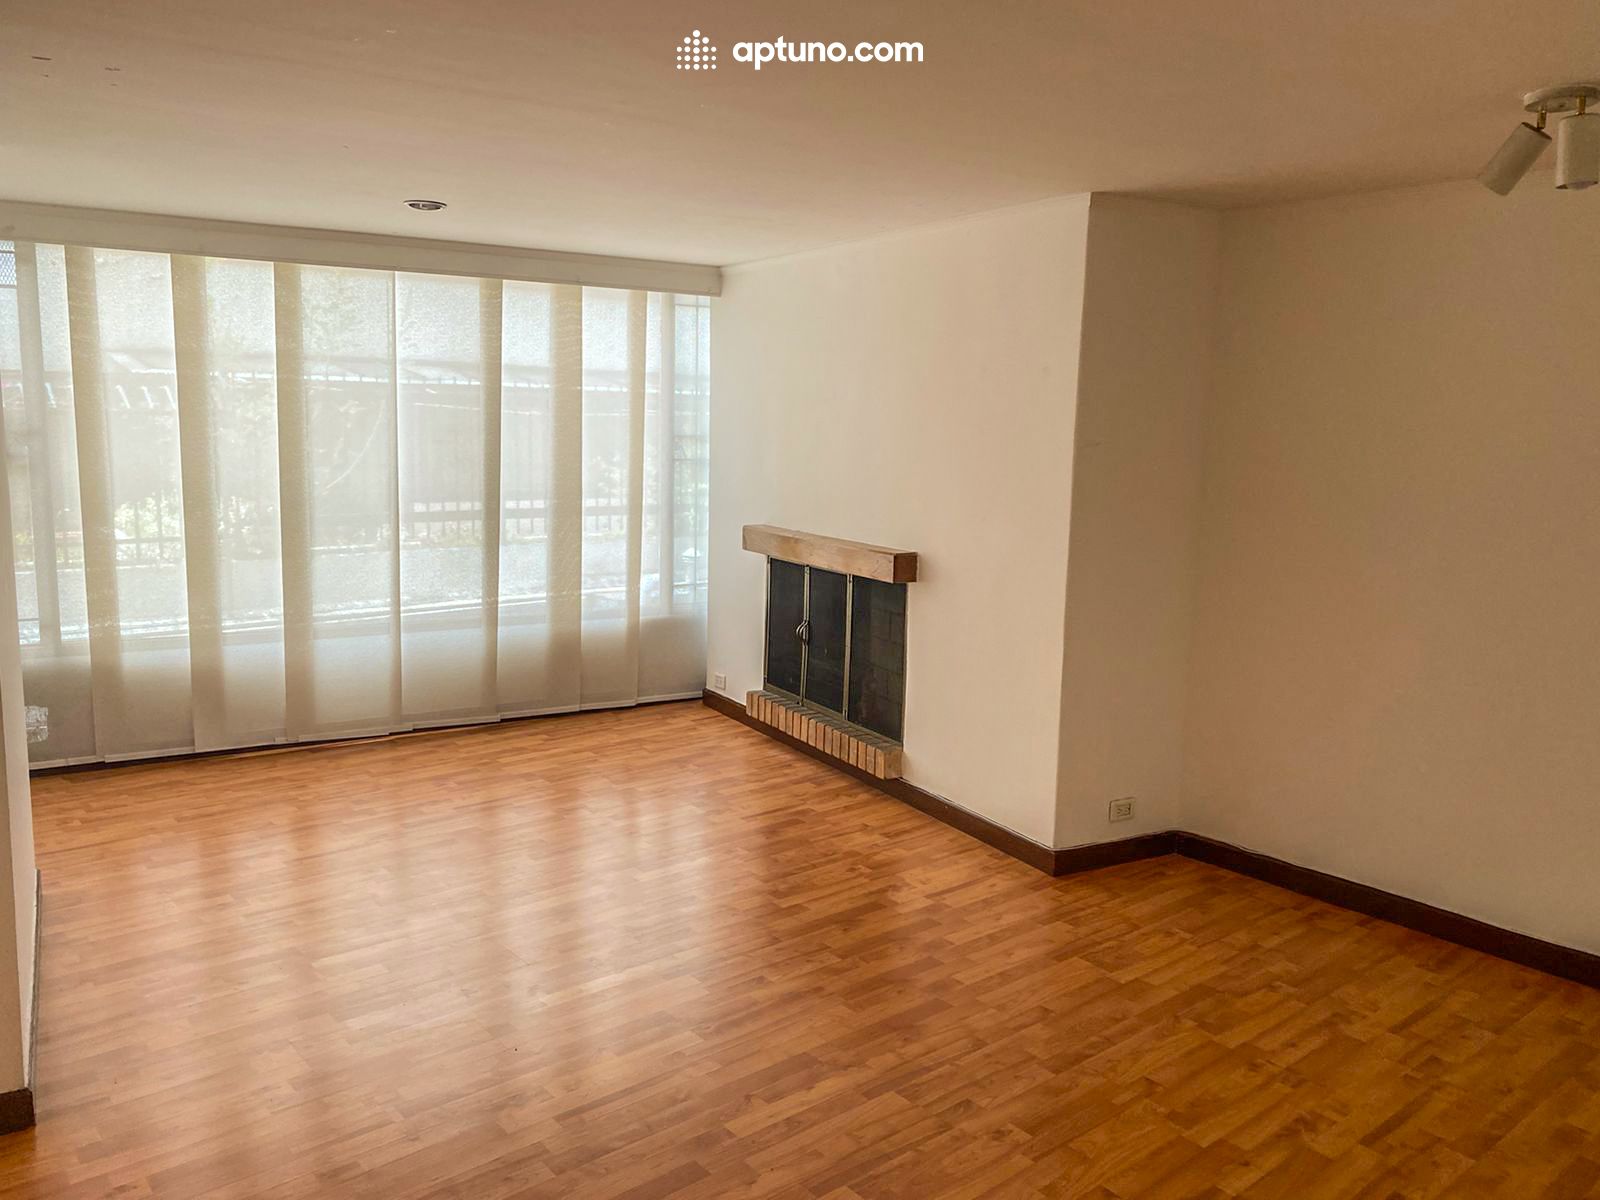 Apartamento en arriendo Santa Bárbara Central 90 m² - $ 3.000.000,00